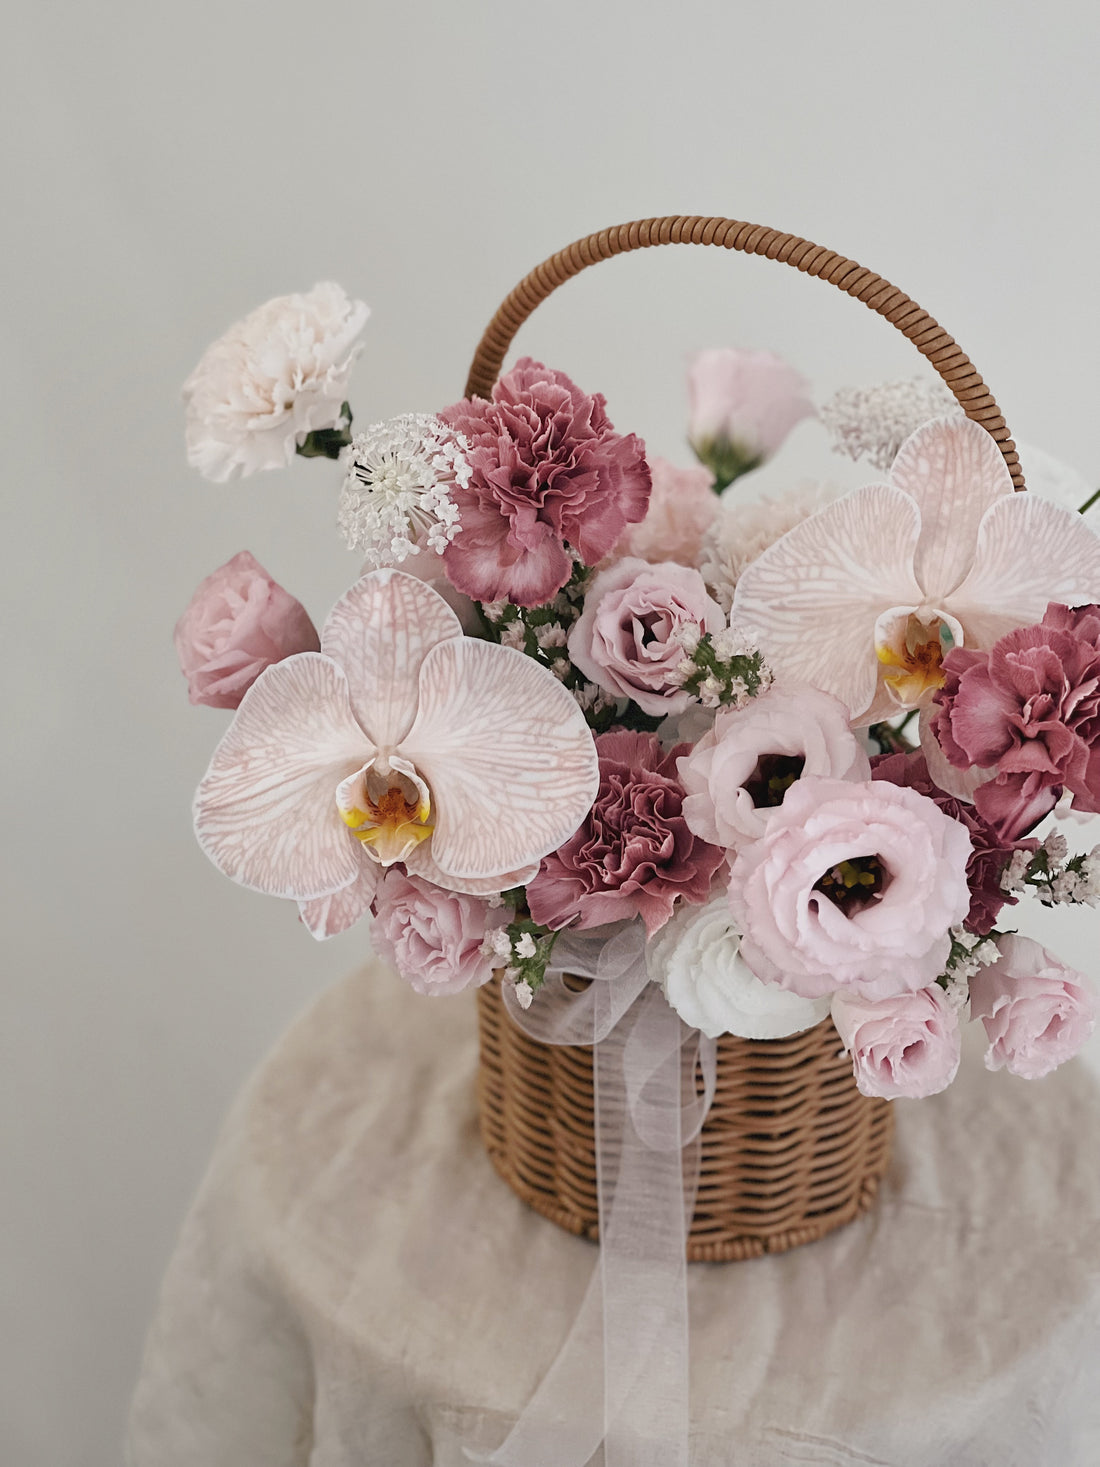 全世界最美麗的女人 母親節康乃馨鮮花盆花